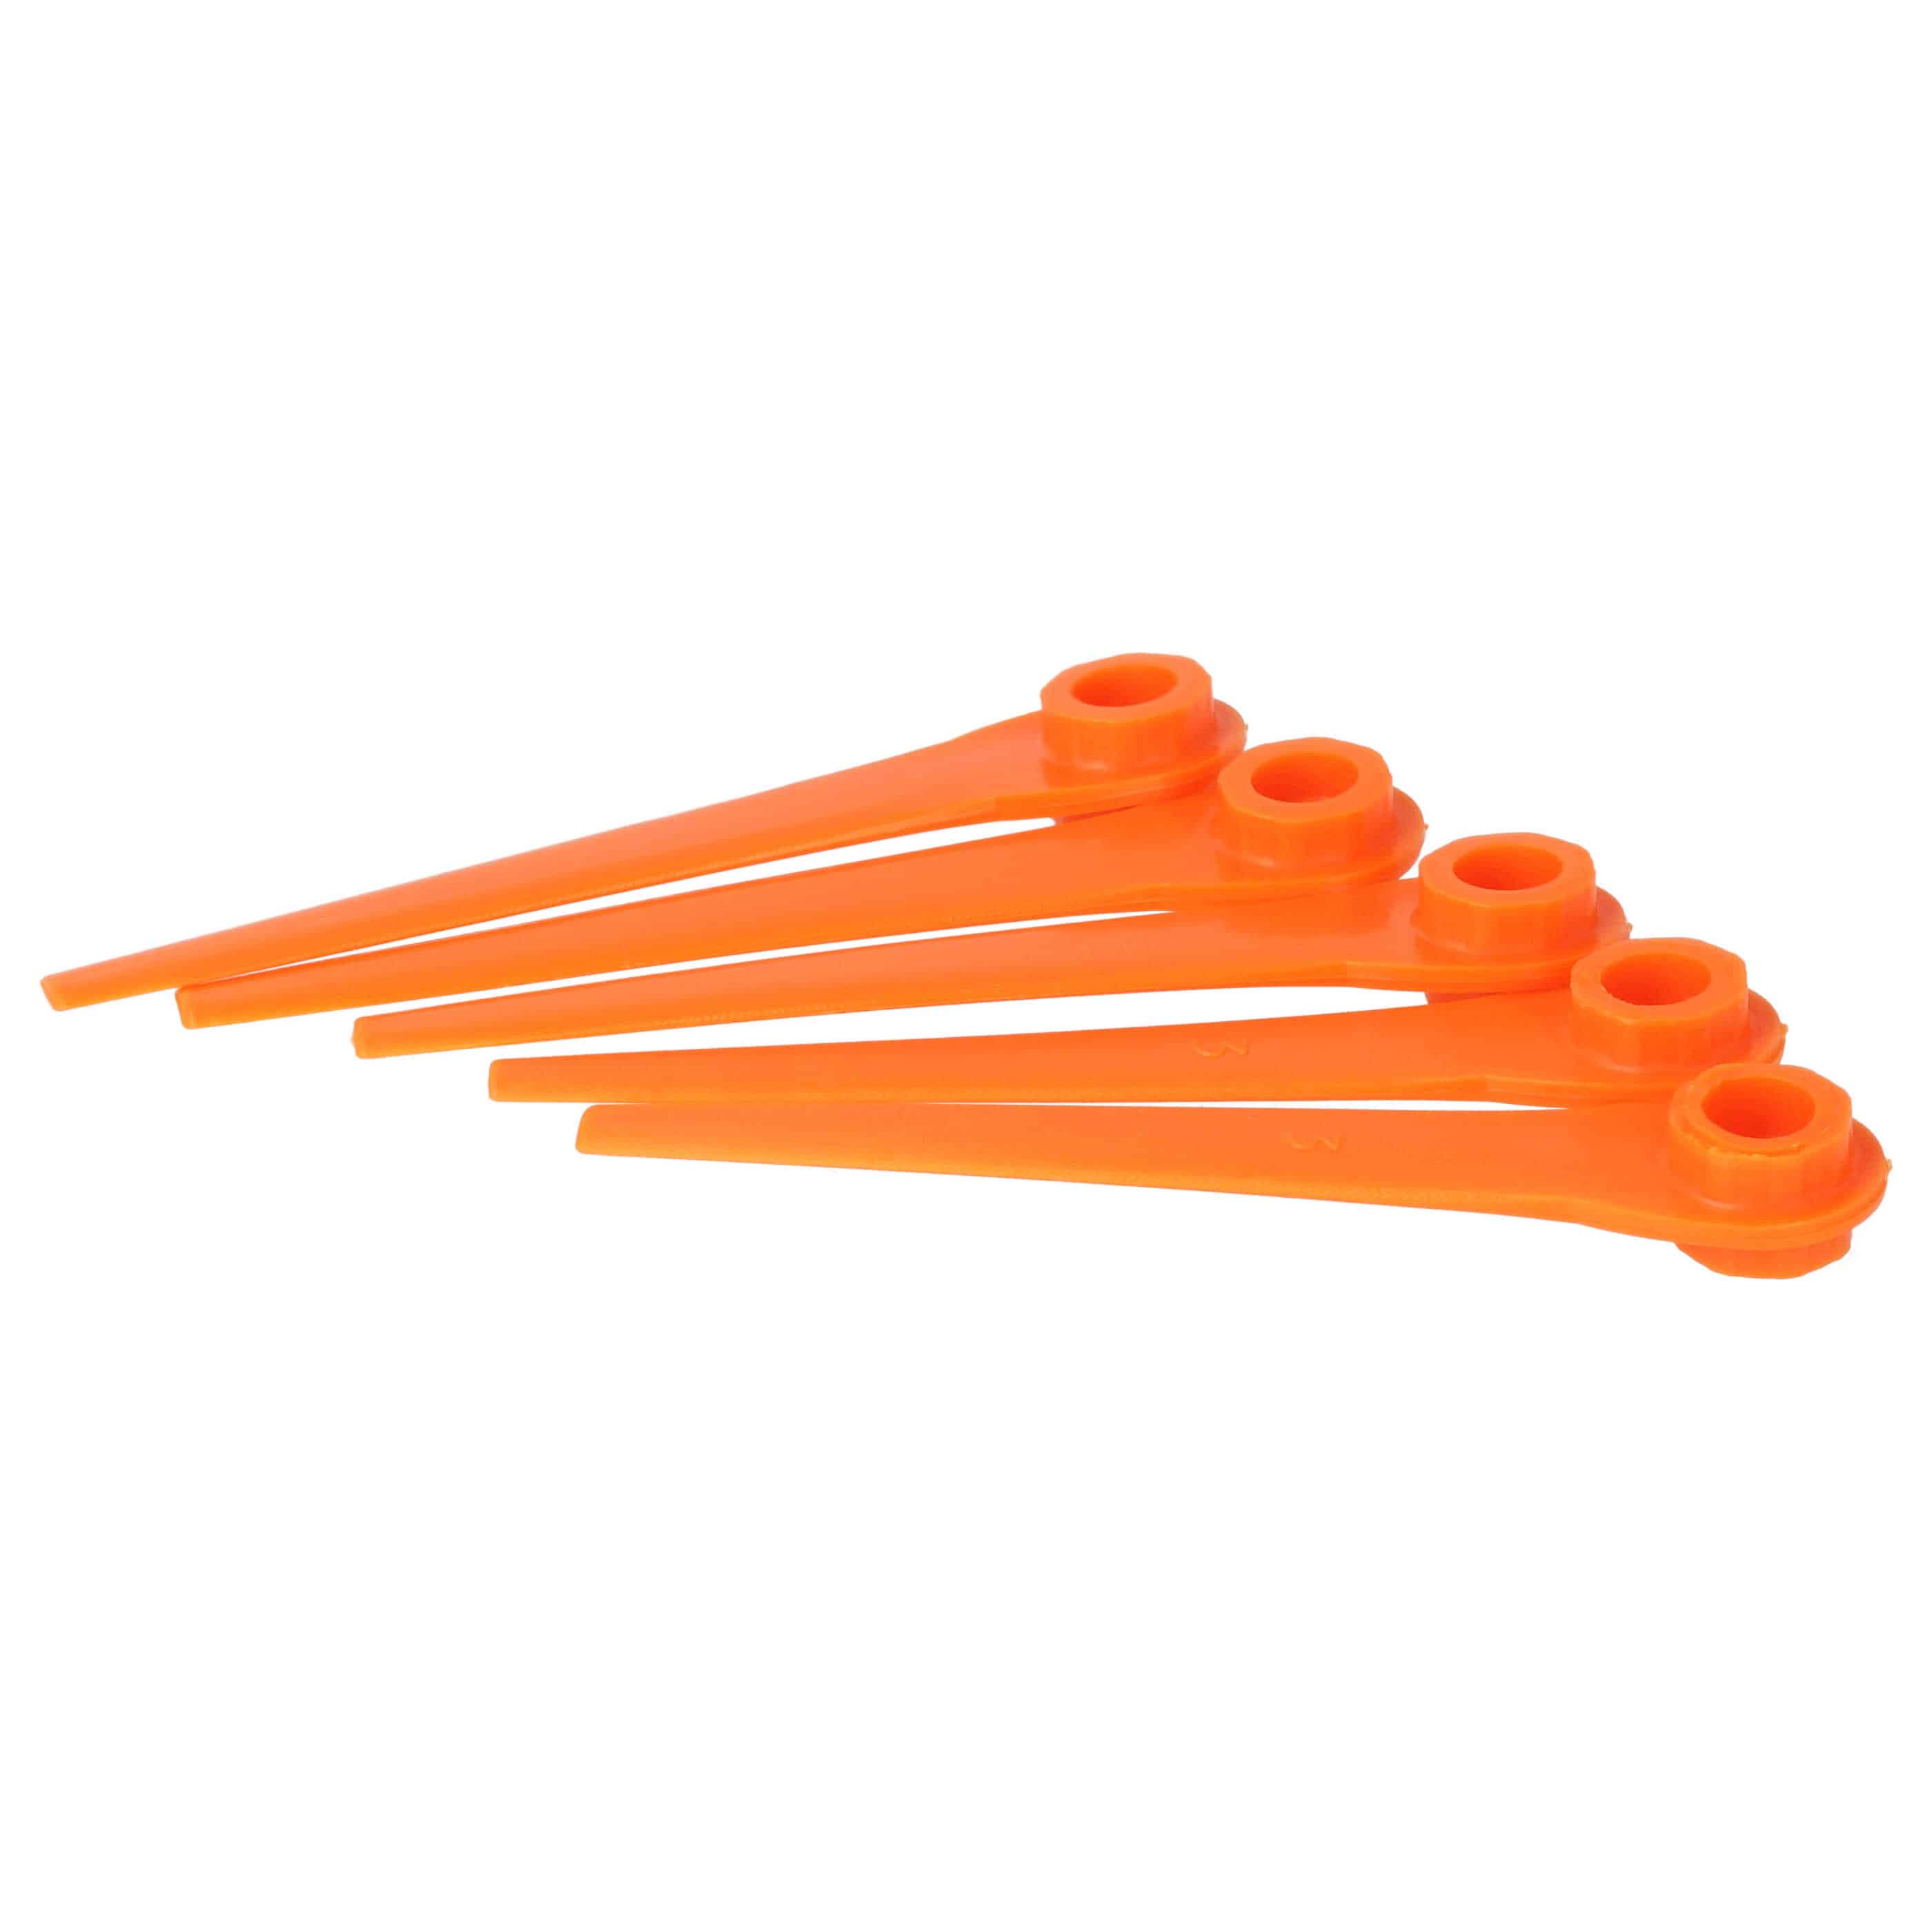 10x Lames remplace Gardena RotorCut 5368-20 pour débroussailleuse – Couteaux plastique, Orange